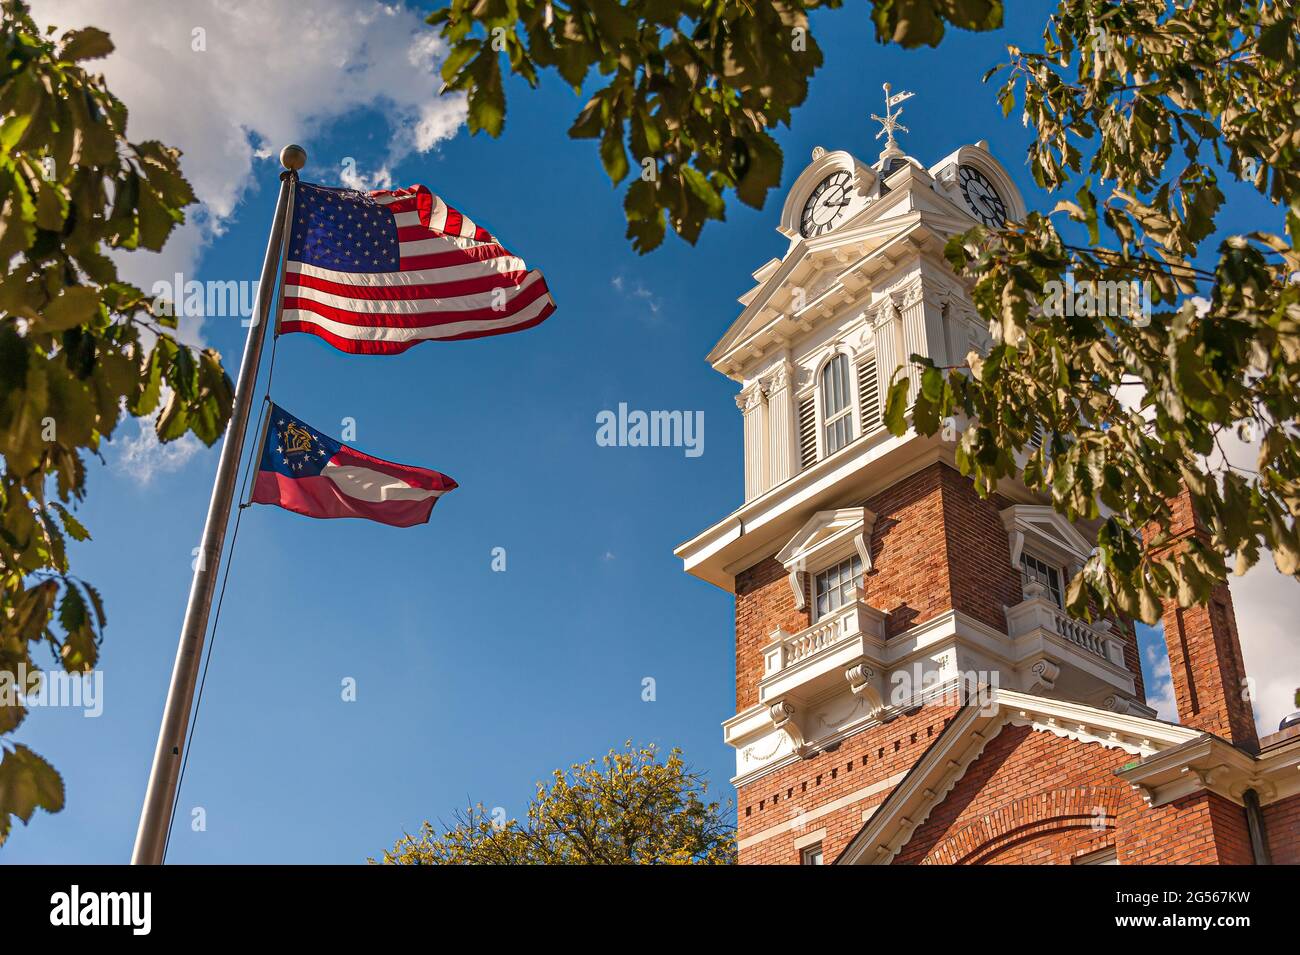 Drapeau américain et drapeau d'état de Géorgie agitant devant le palais de justice historique de Gwinnett sur la place de la ville à Lawrenceville, Géorgie. (ÉTATS-UNIS) Banque D'Images